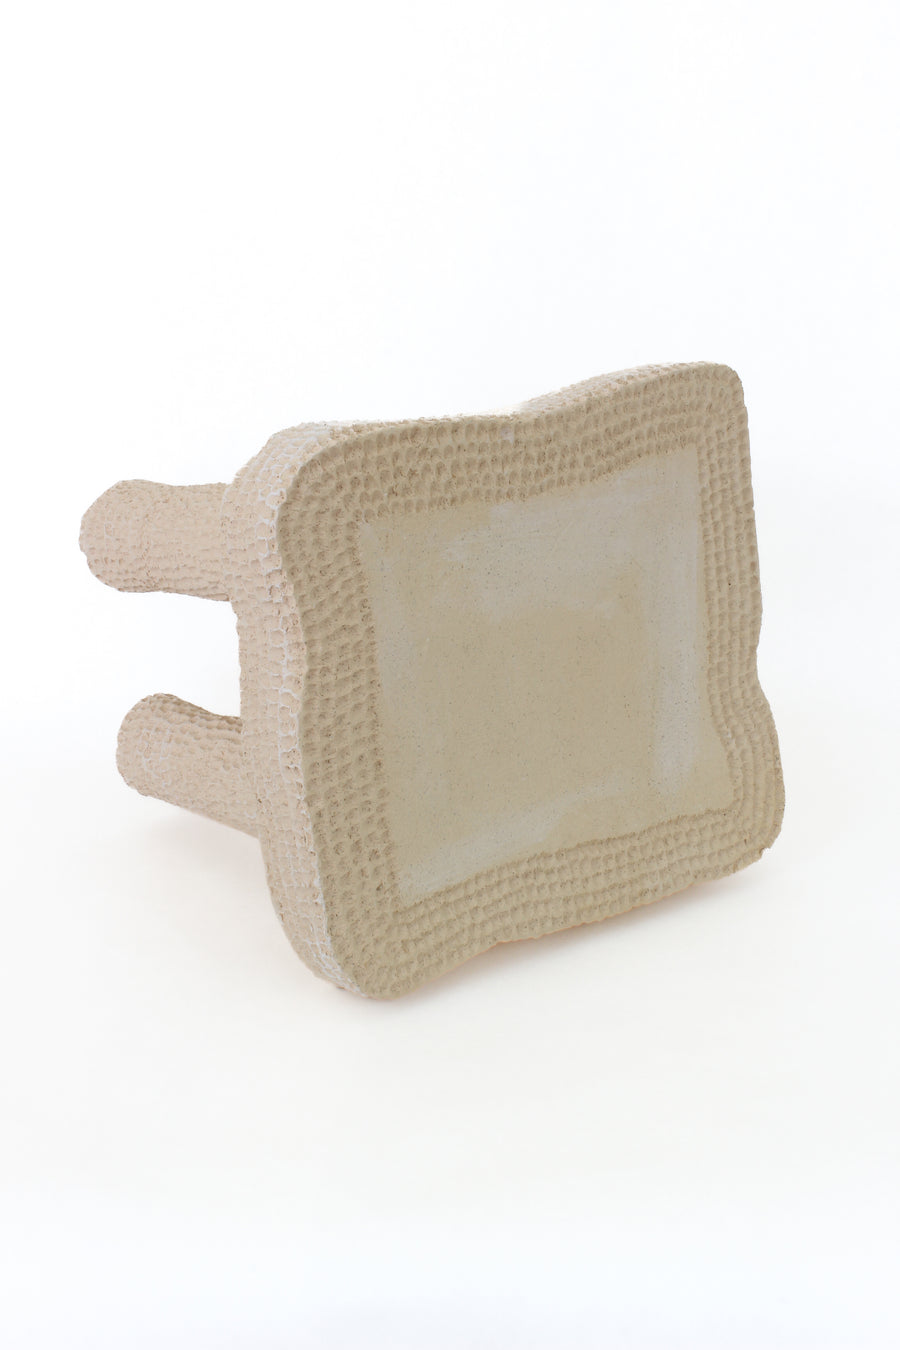 Carvado 02 Ceramic Stool